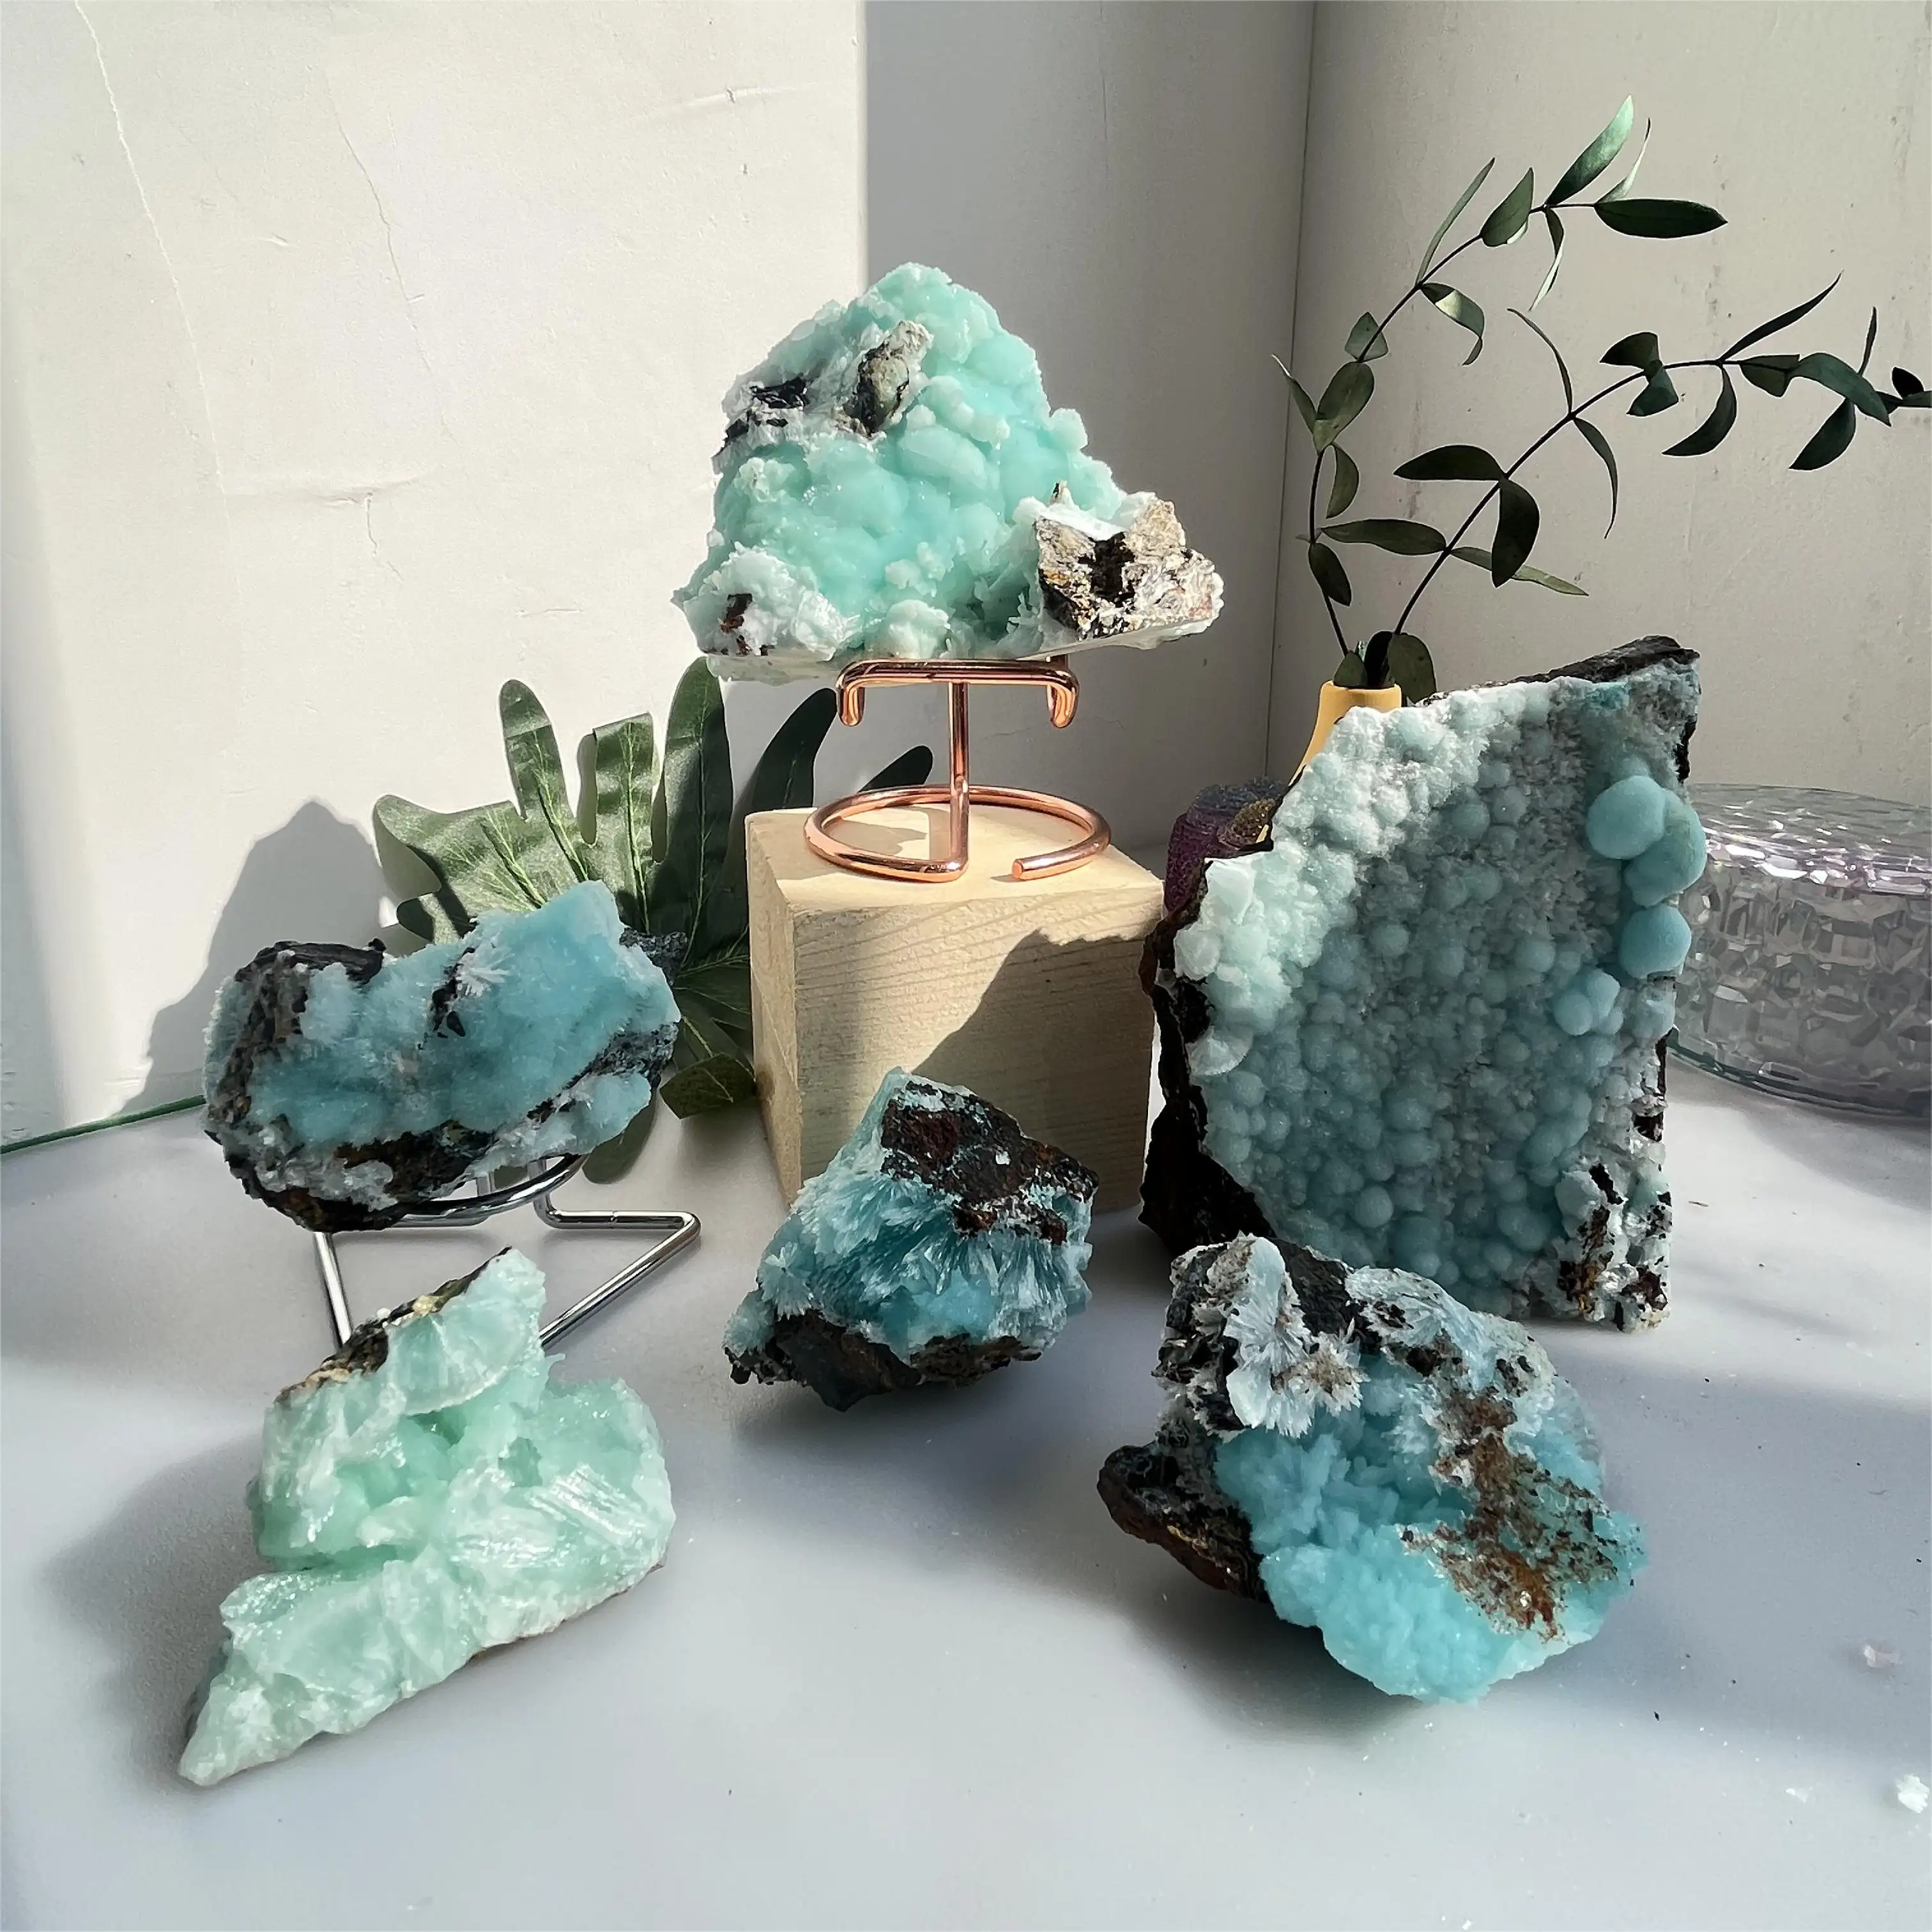 Venta al por mayor de piedras de cristal natural cristal curativo a granel comprar piedra original azul aragonita racimo para la decoración del hogar